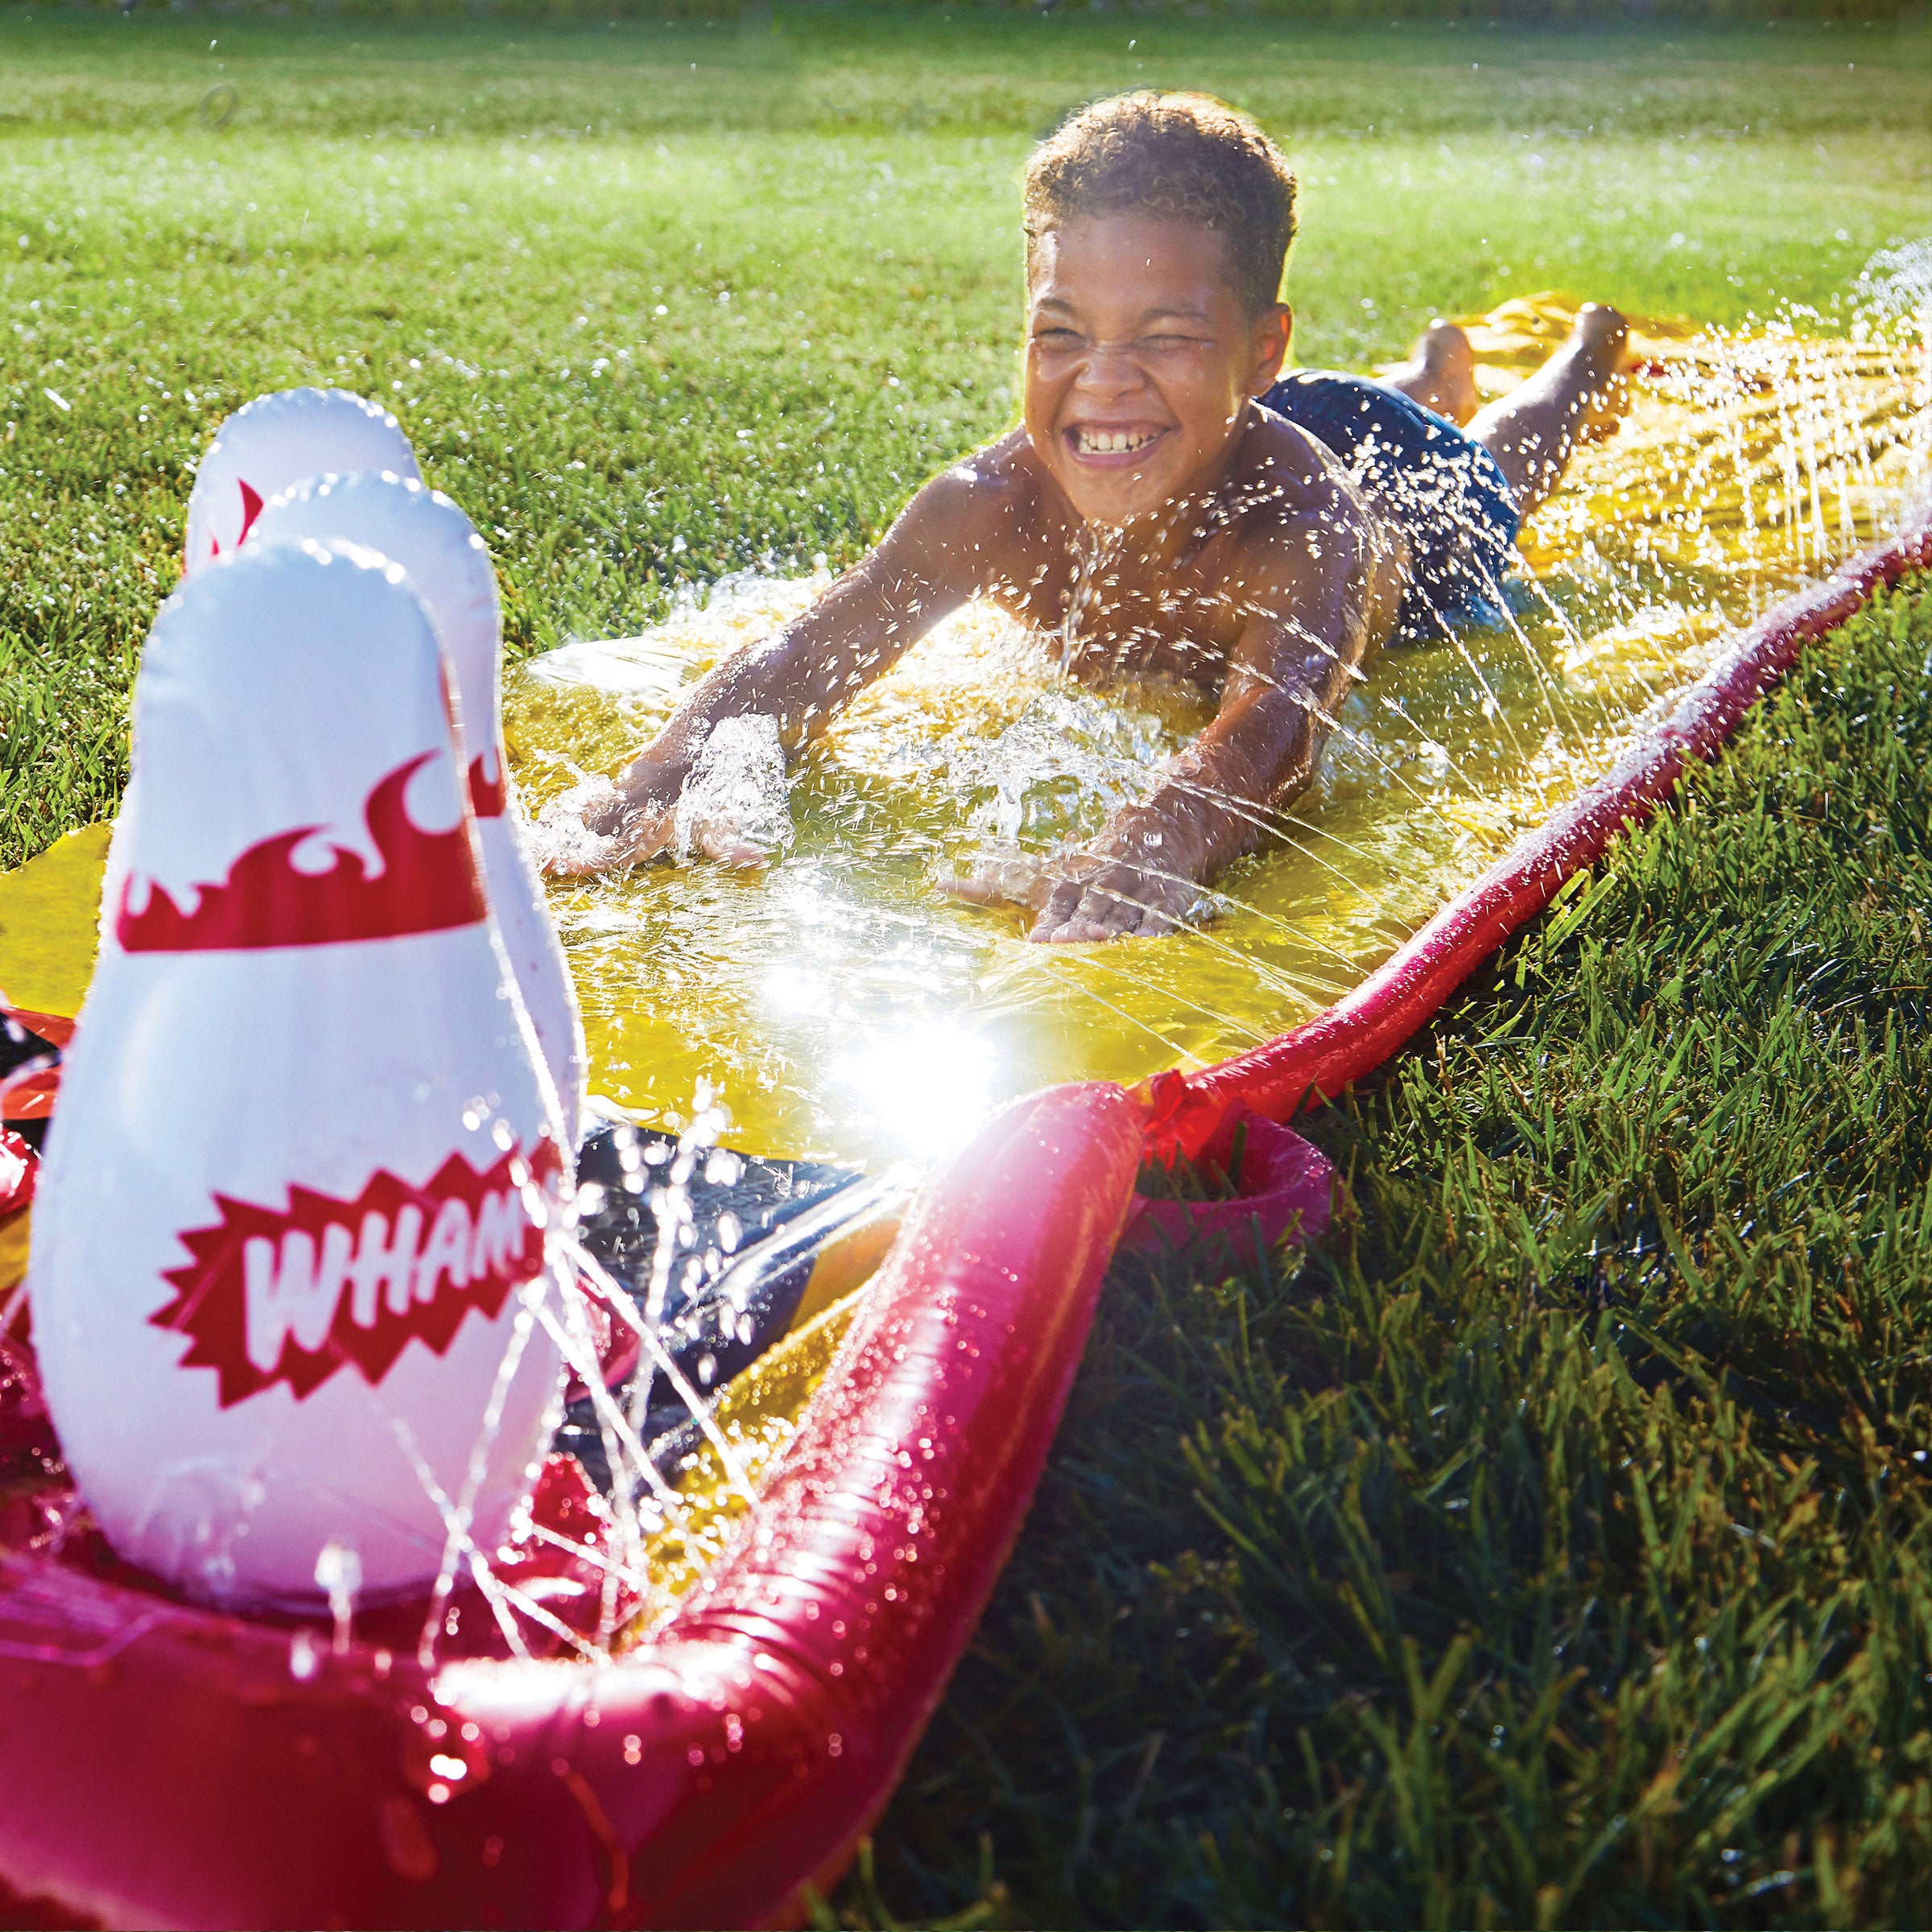 A boy is sliding on Wham-O Splash Bowling